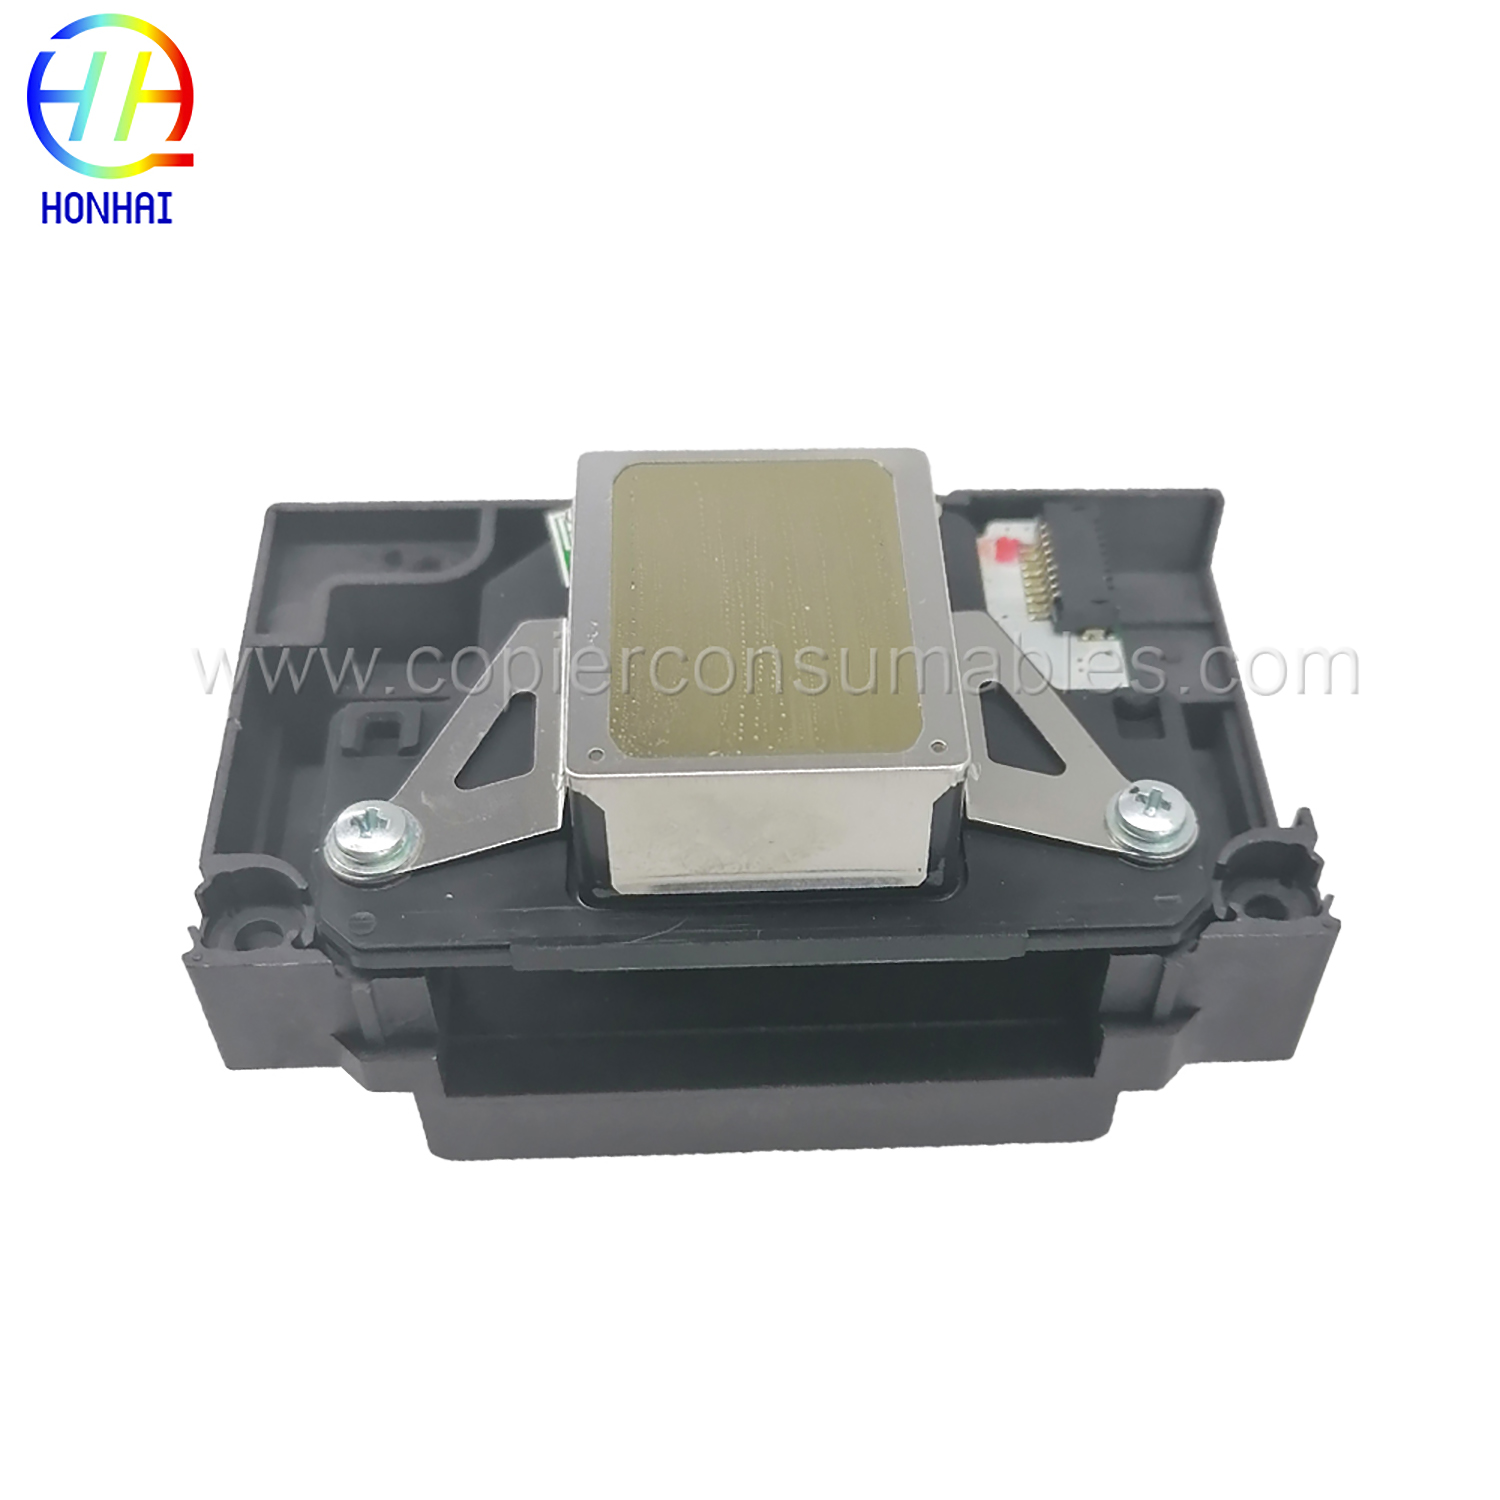 Testina di stampa compatibile per Epson L1800 1410 1430 1500W